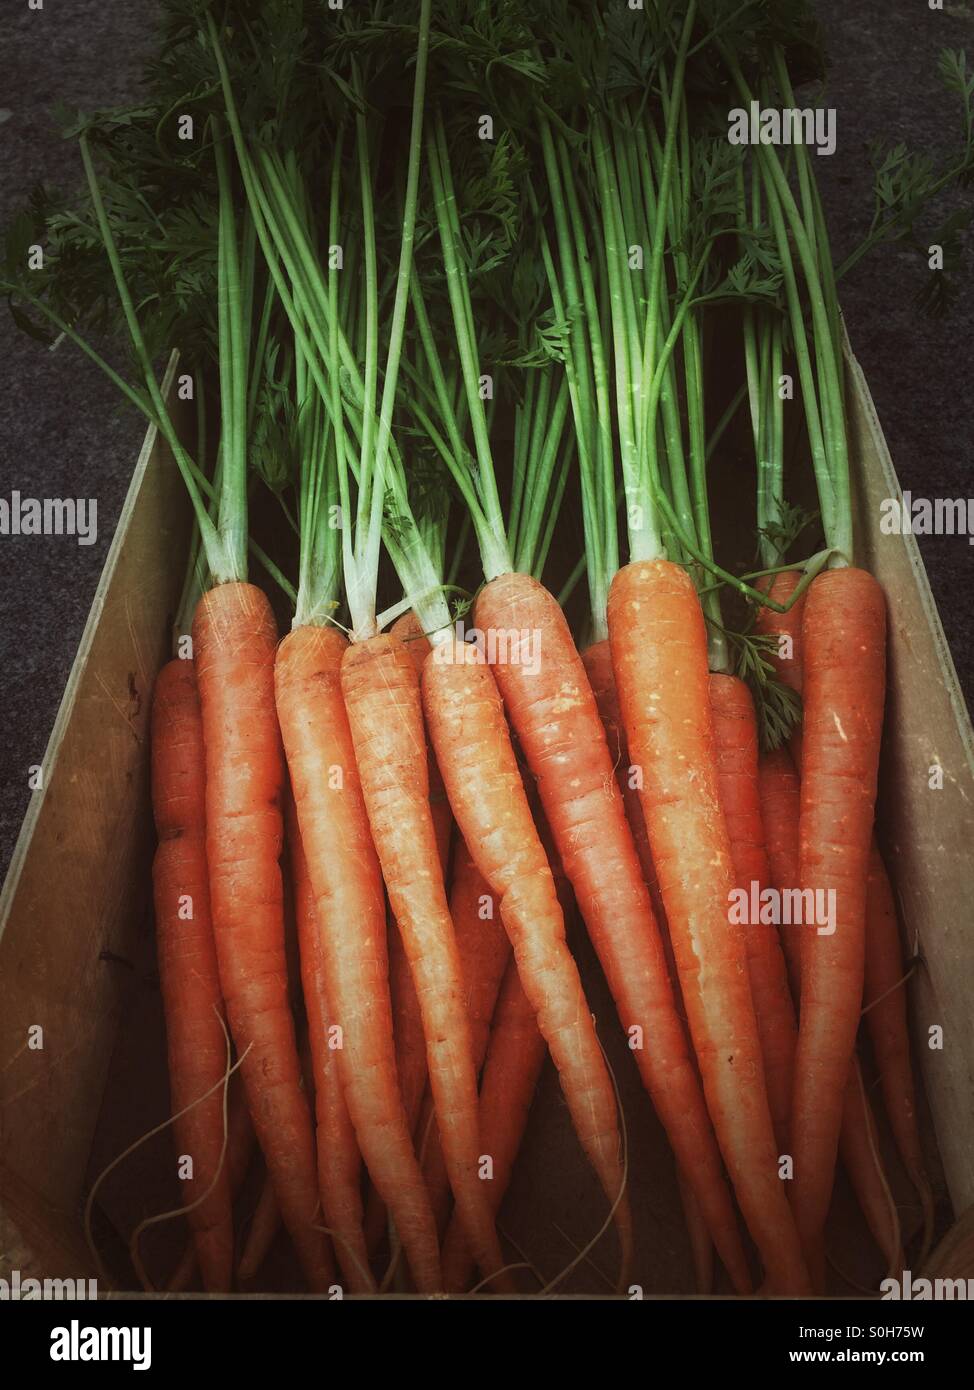 Nuovo e fresco raccolto le carote con cime di verde in una scatola Foto Stock